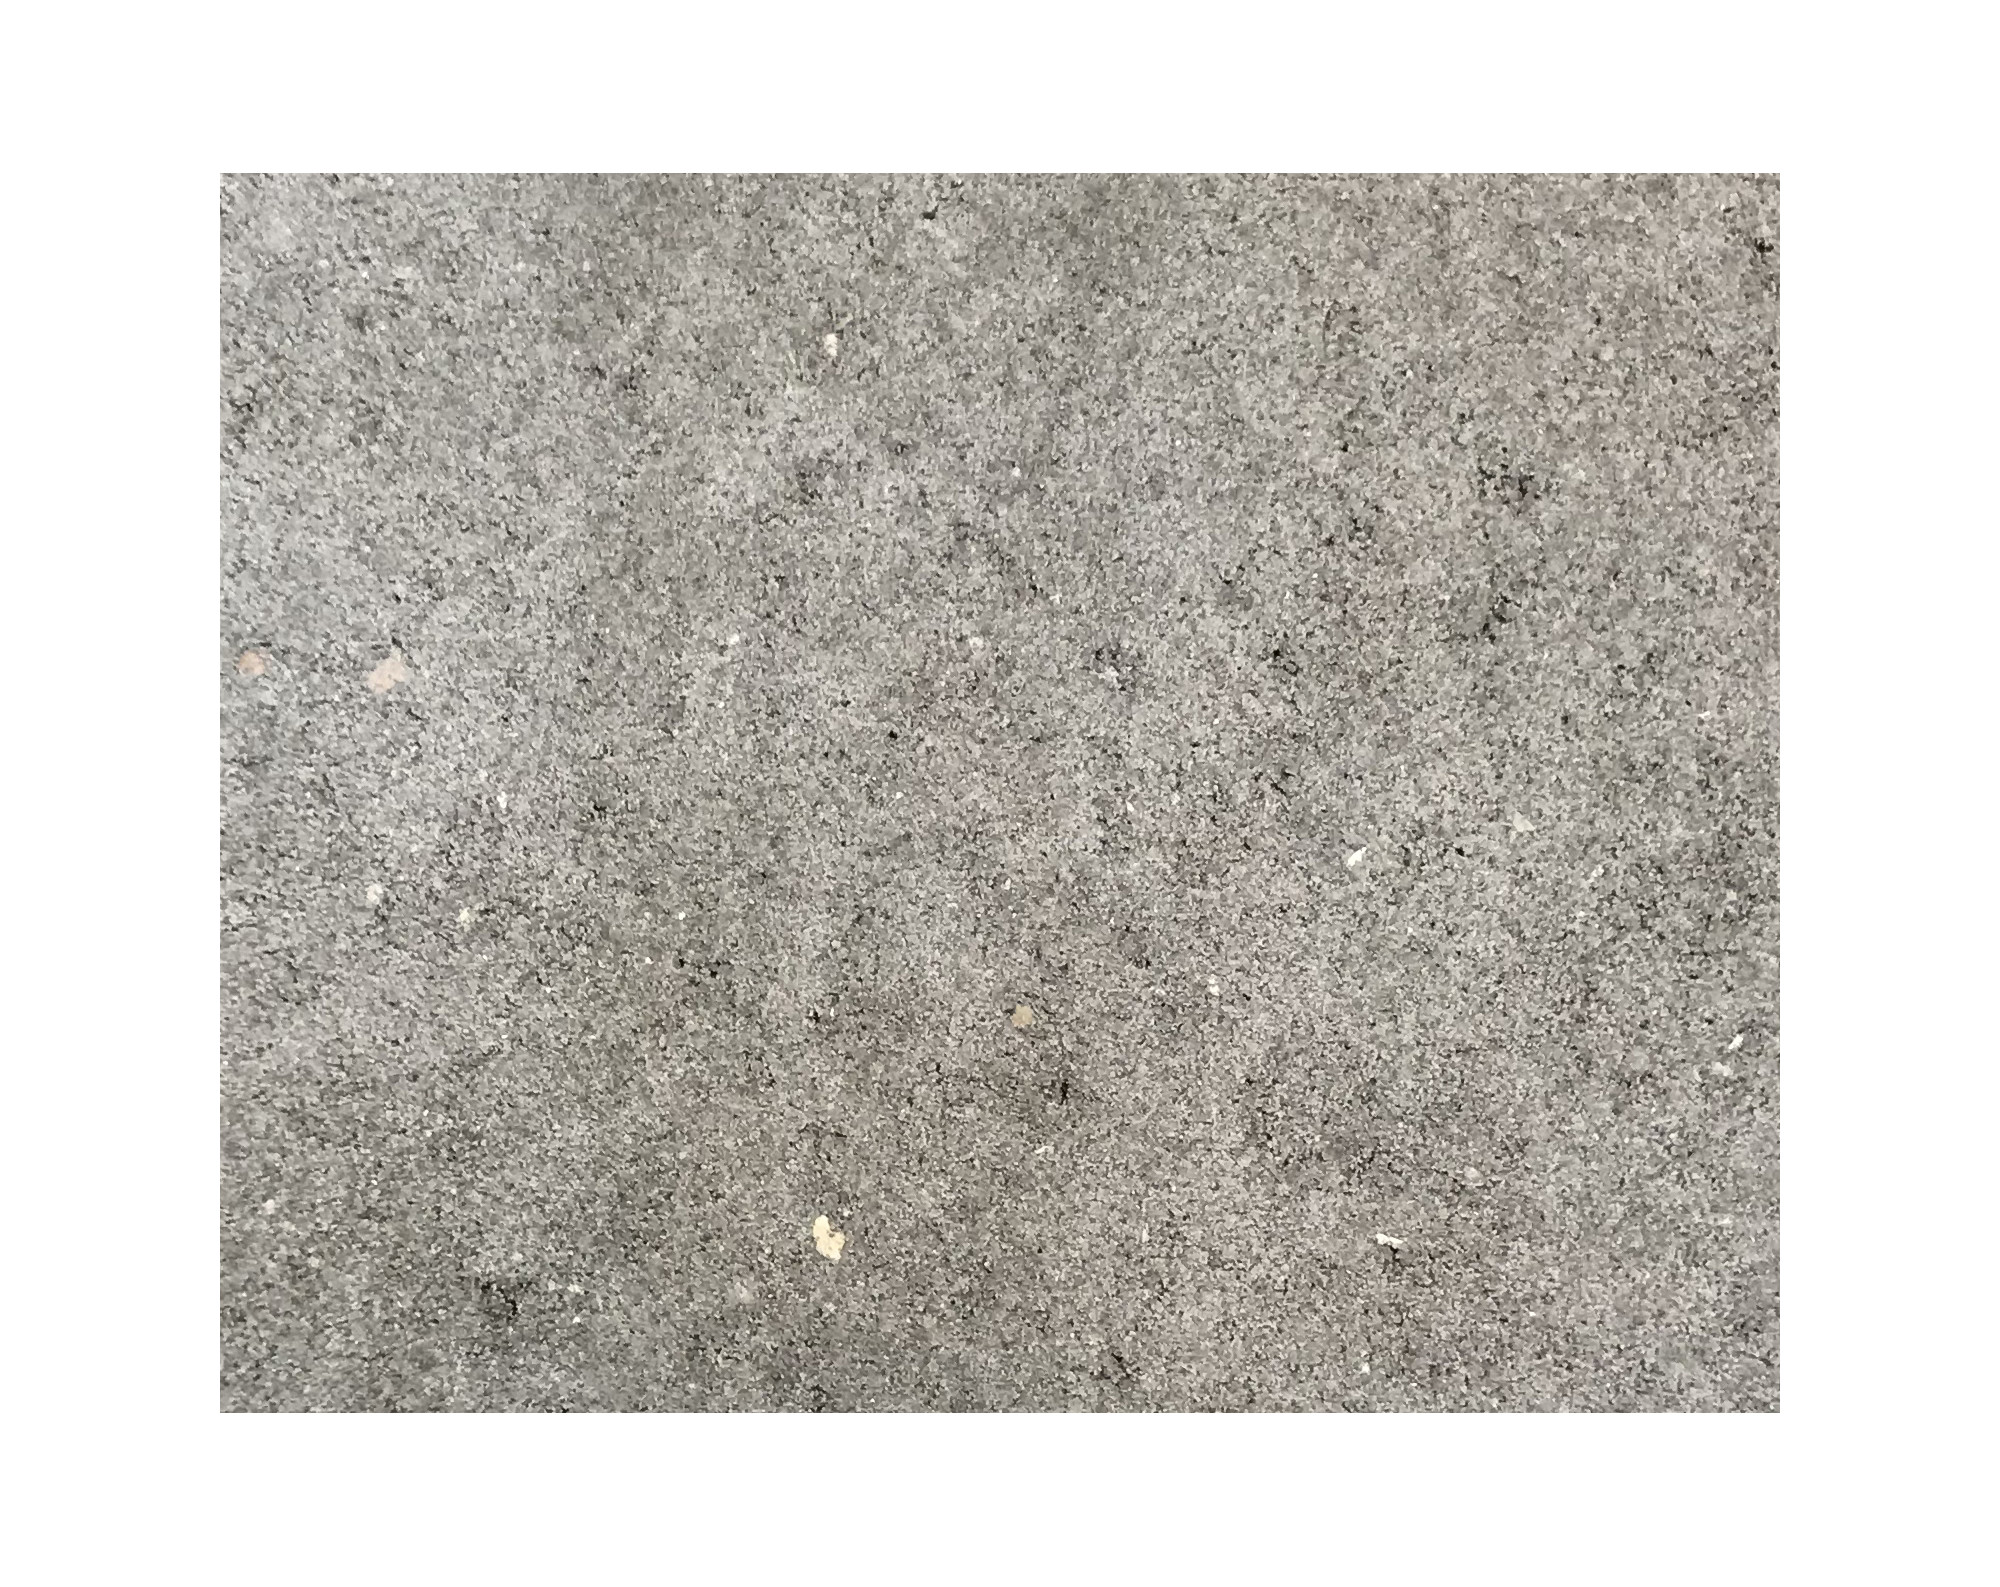 Harmo roc nevadaset,rustica-serie, rechthoekig afmetingen 5,00mx10,00m, grijs, beton